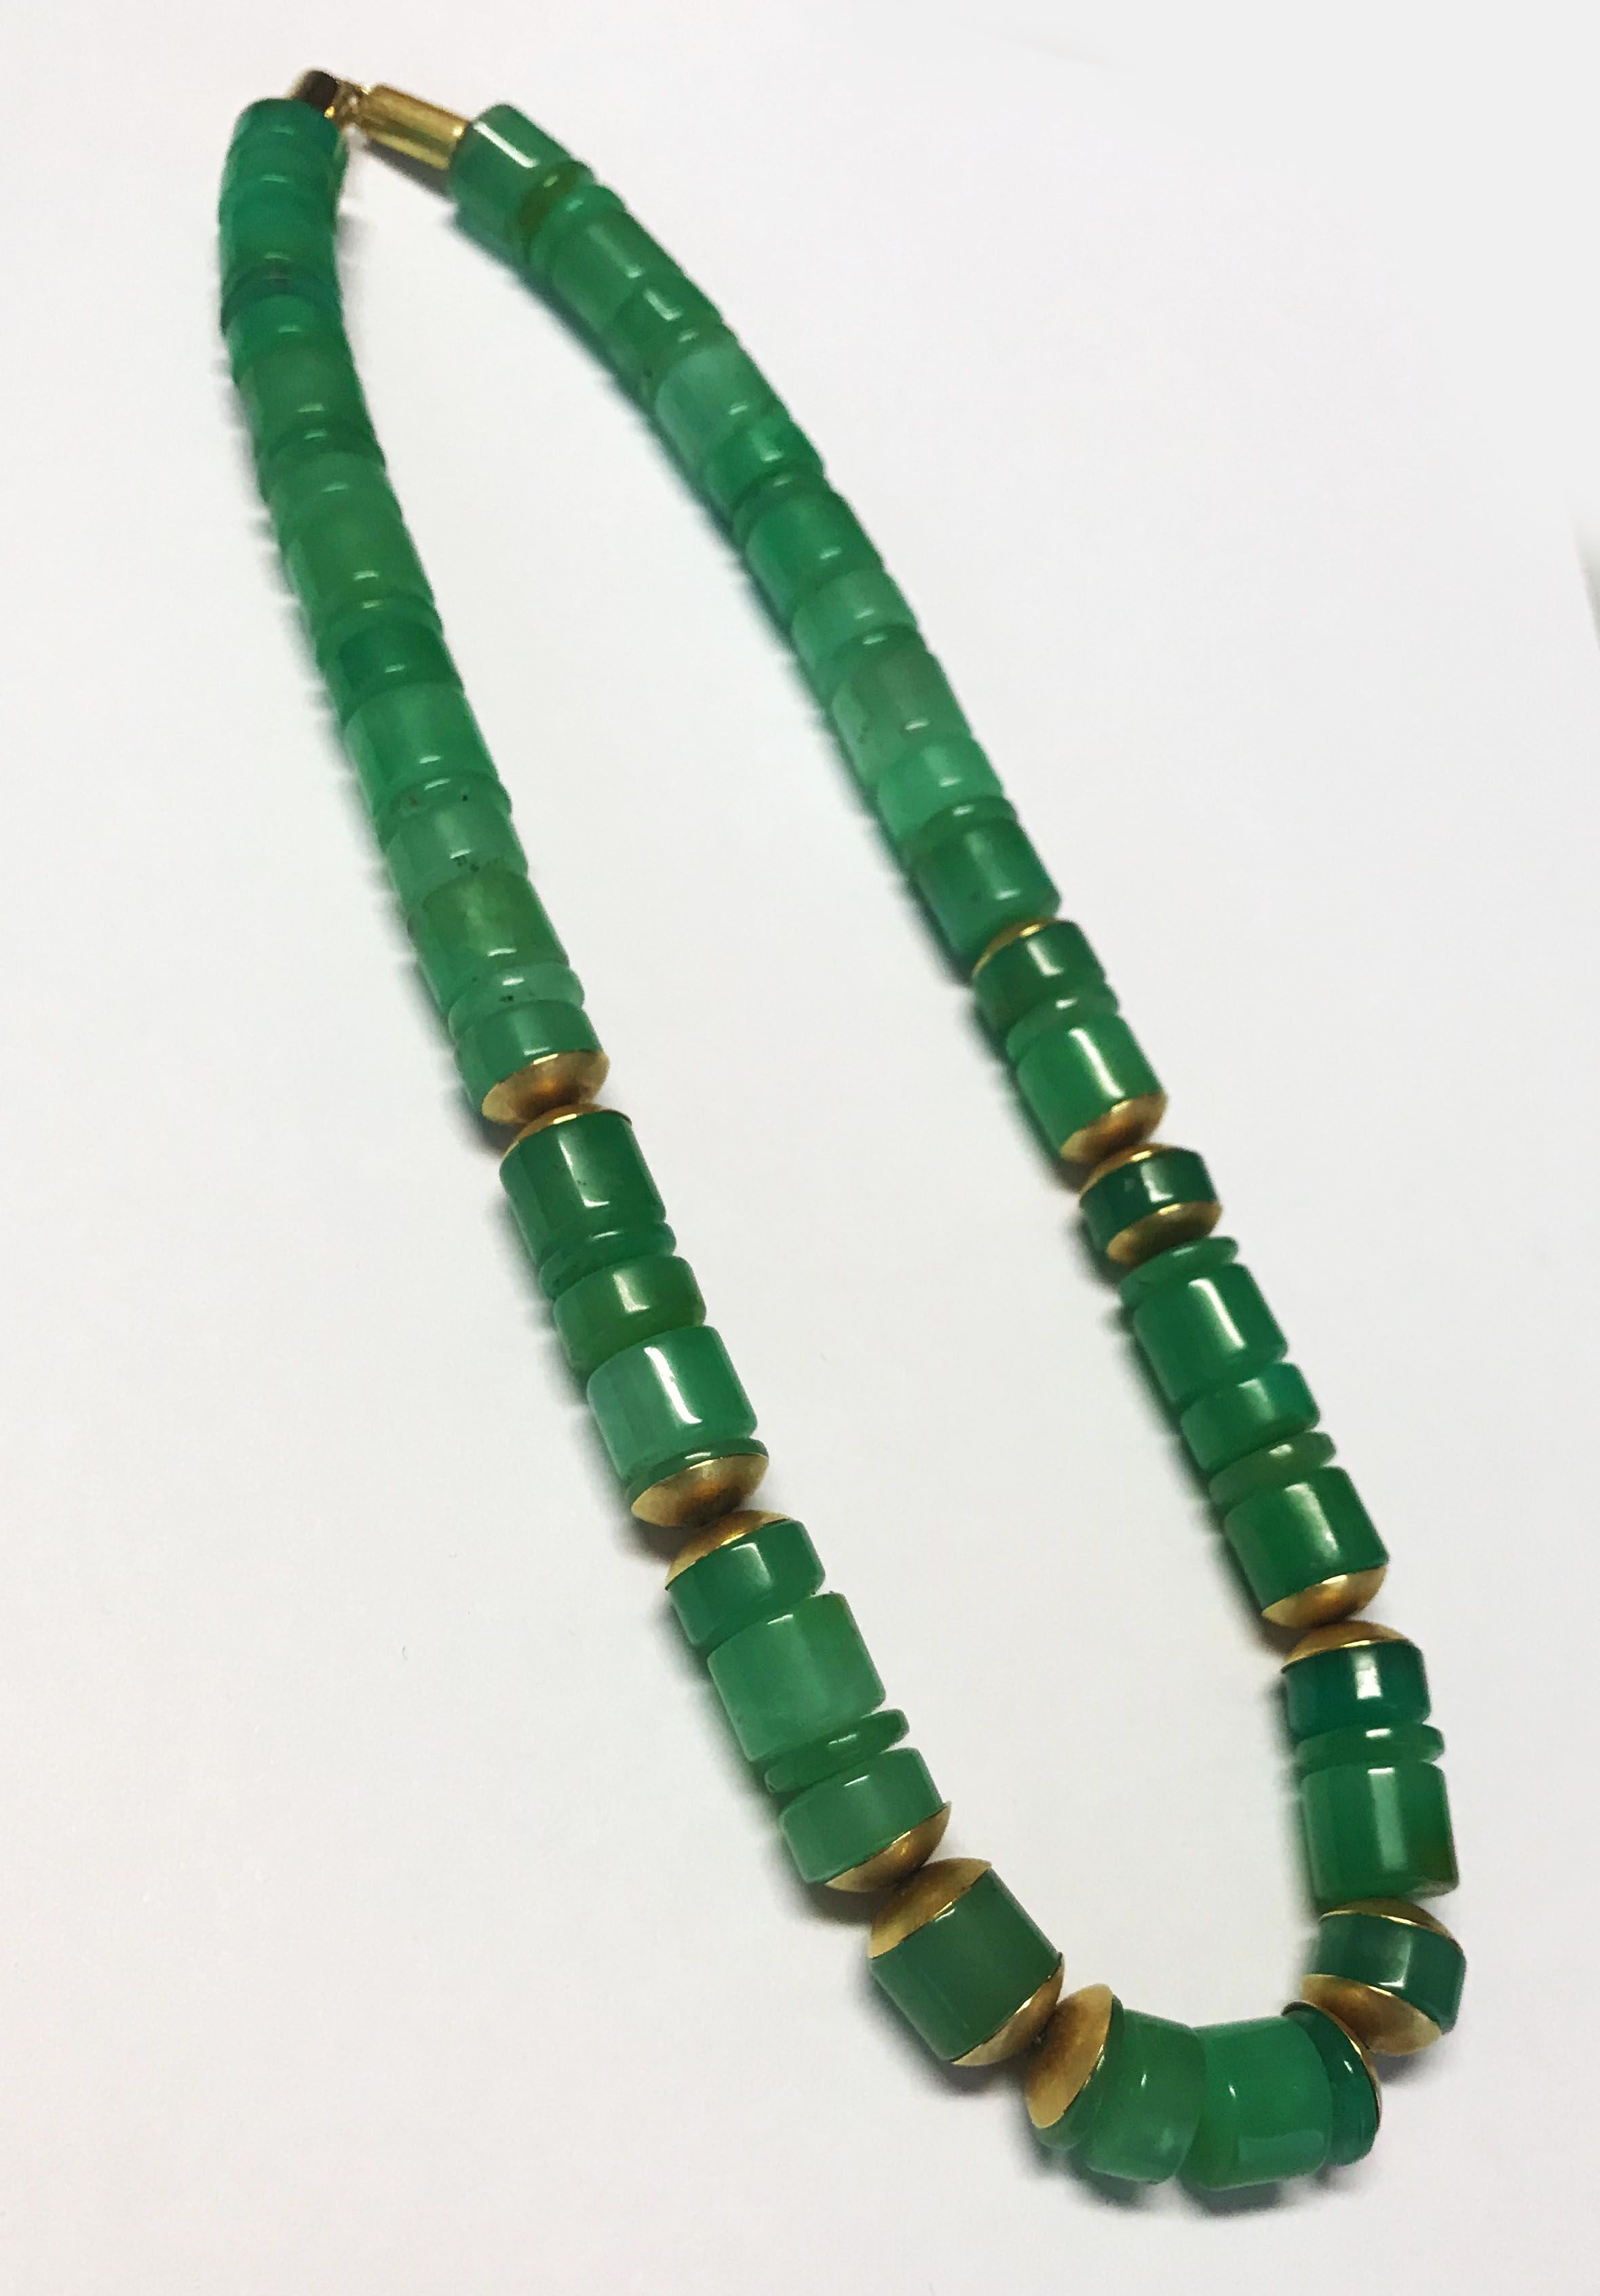 Jadekette bzw Collier mit hellen grünen Jade Steinen in verschiedenen Größen, dazwischen